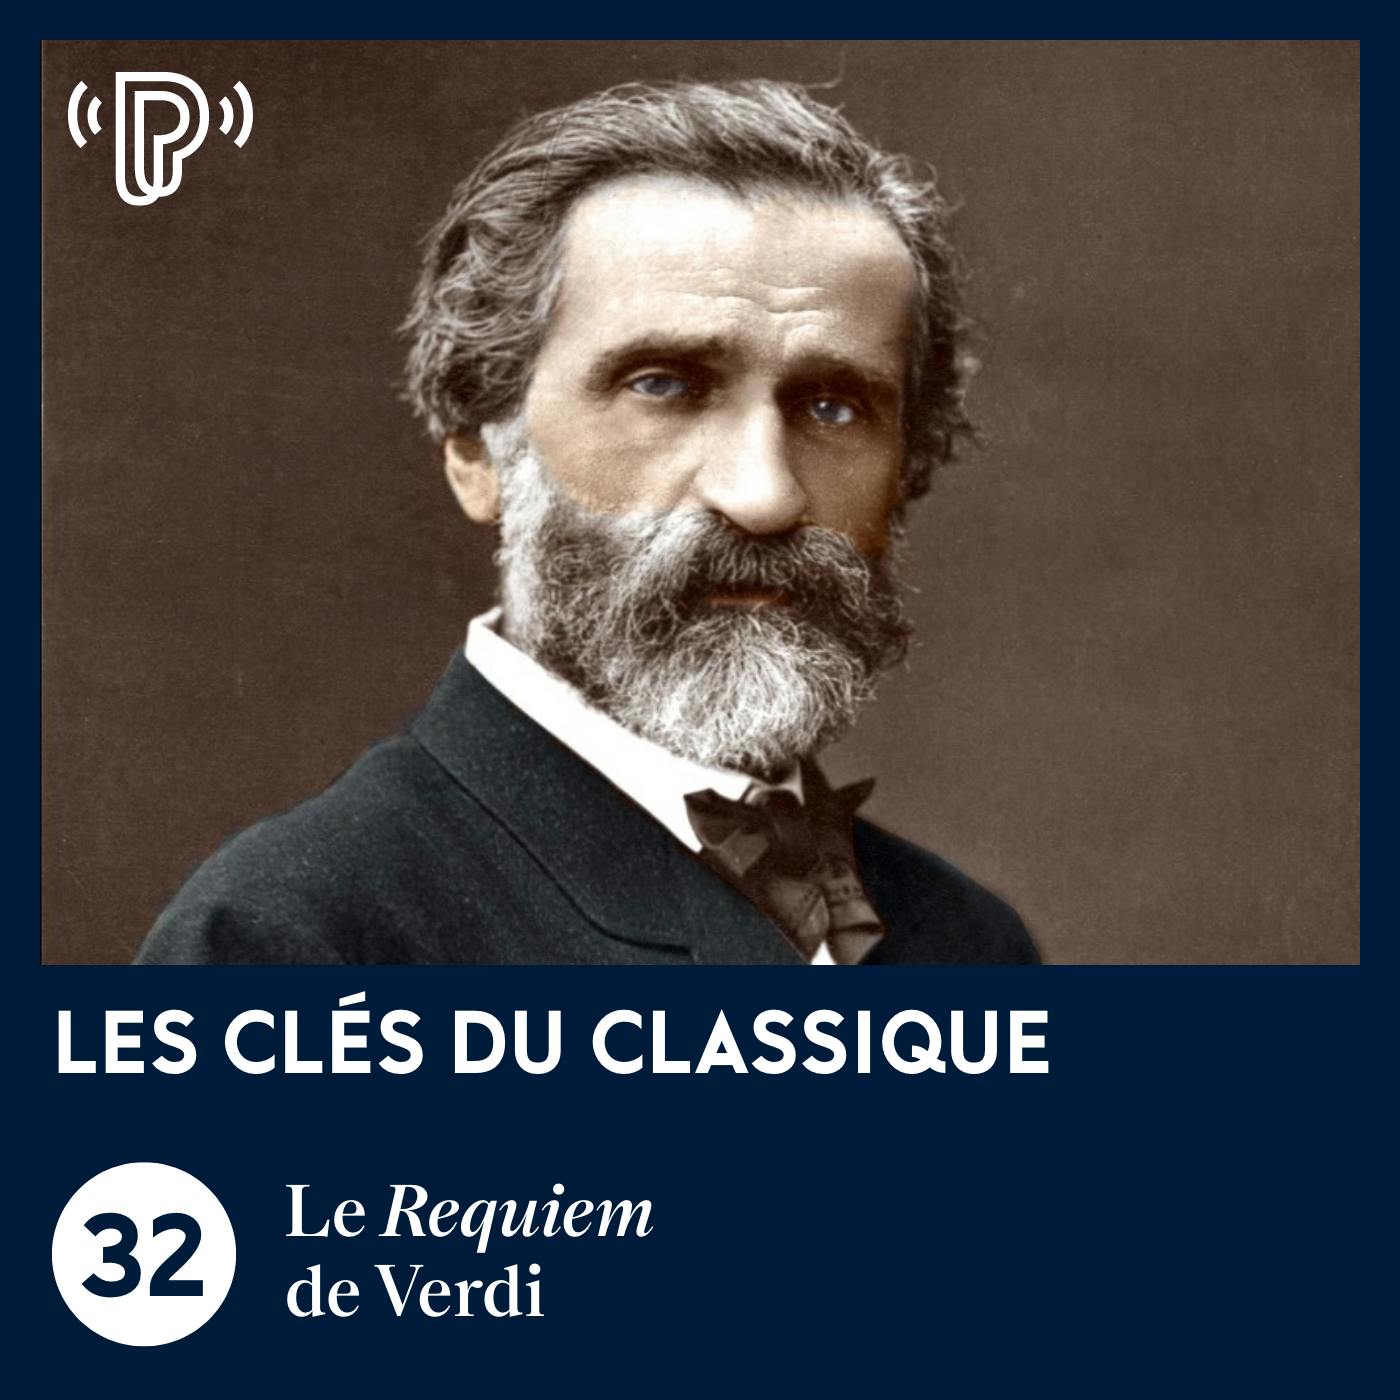 Le Requiem de Verdi | Les Clés du classique #32